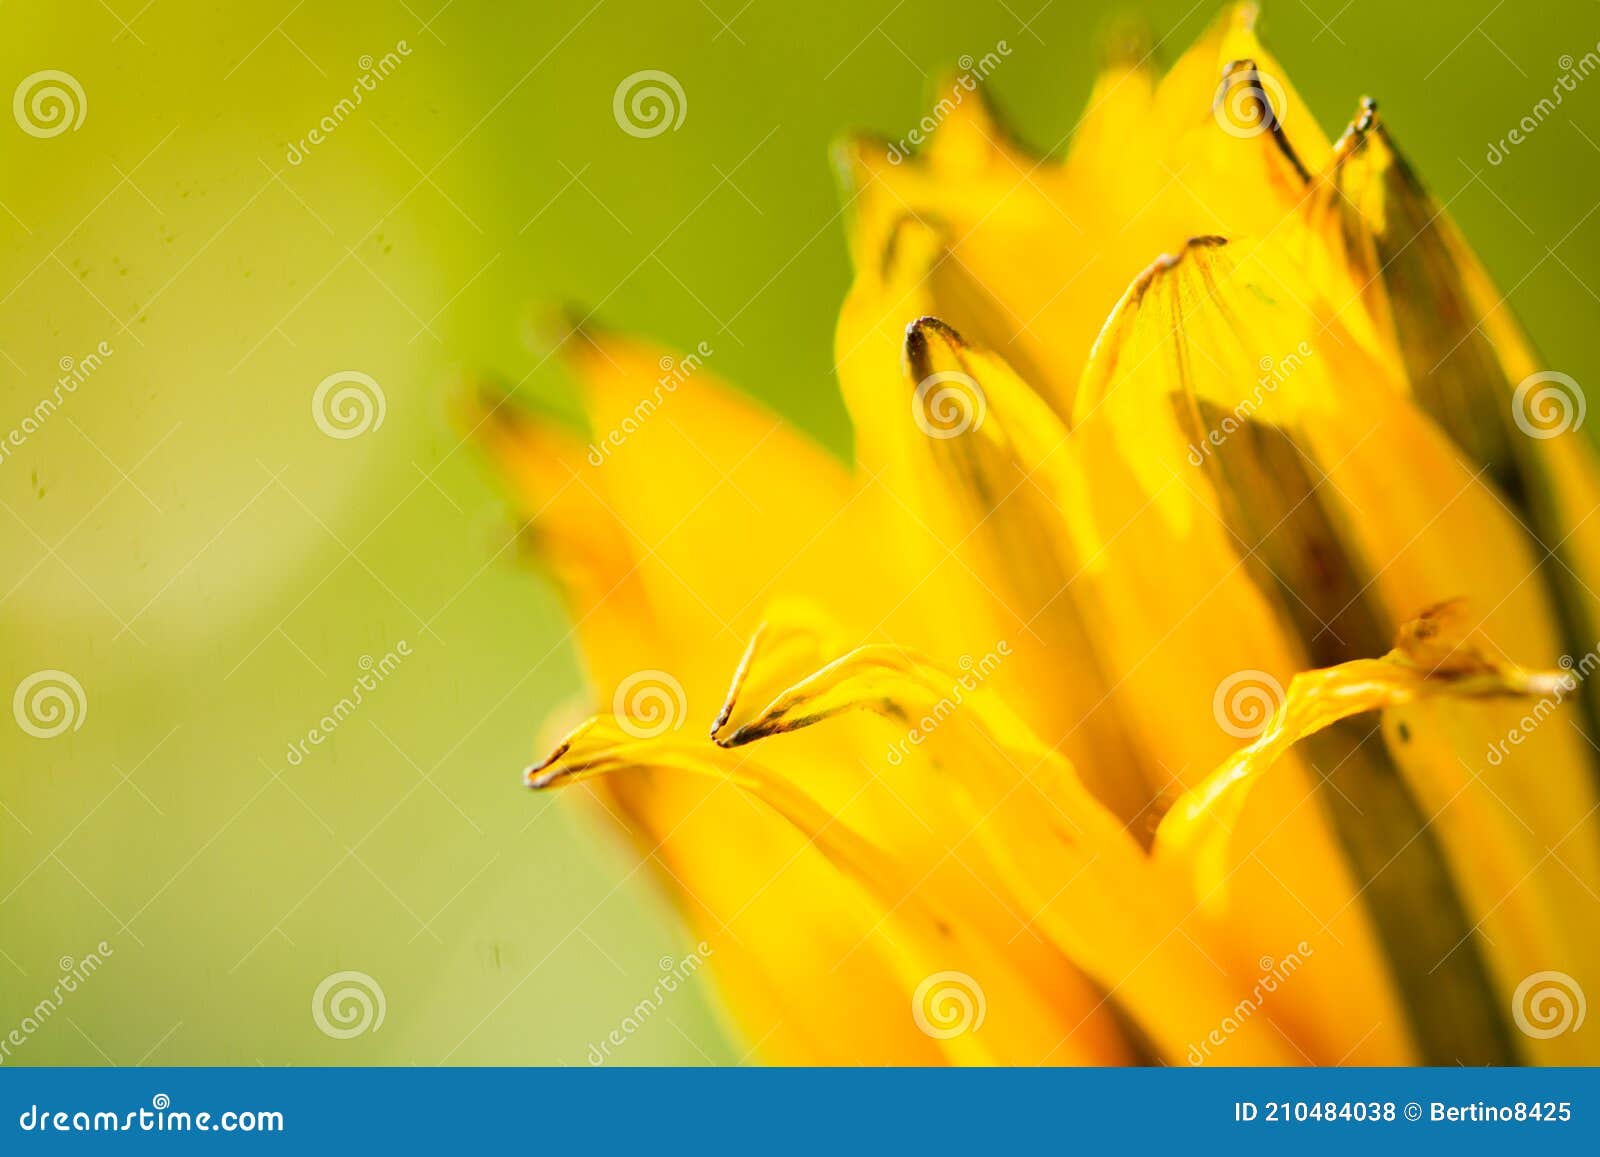 macro photography of yellow